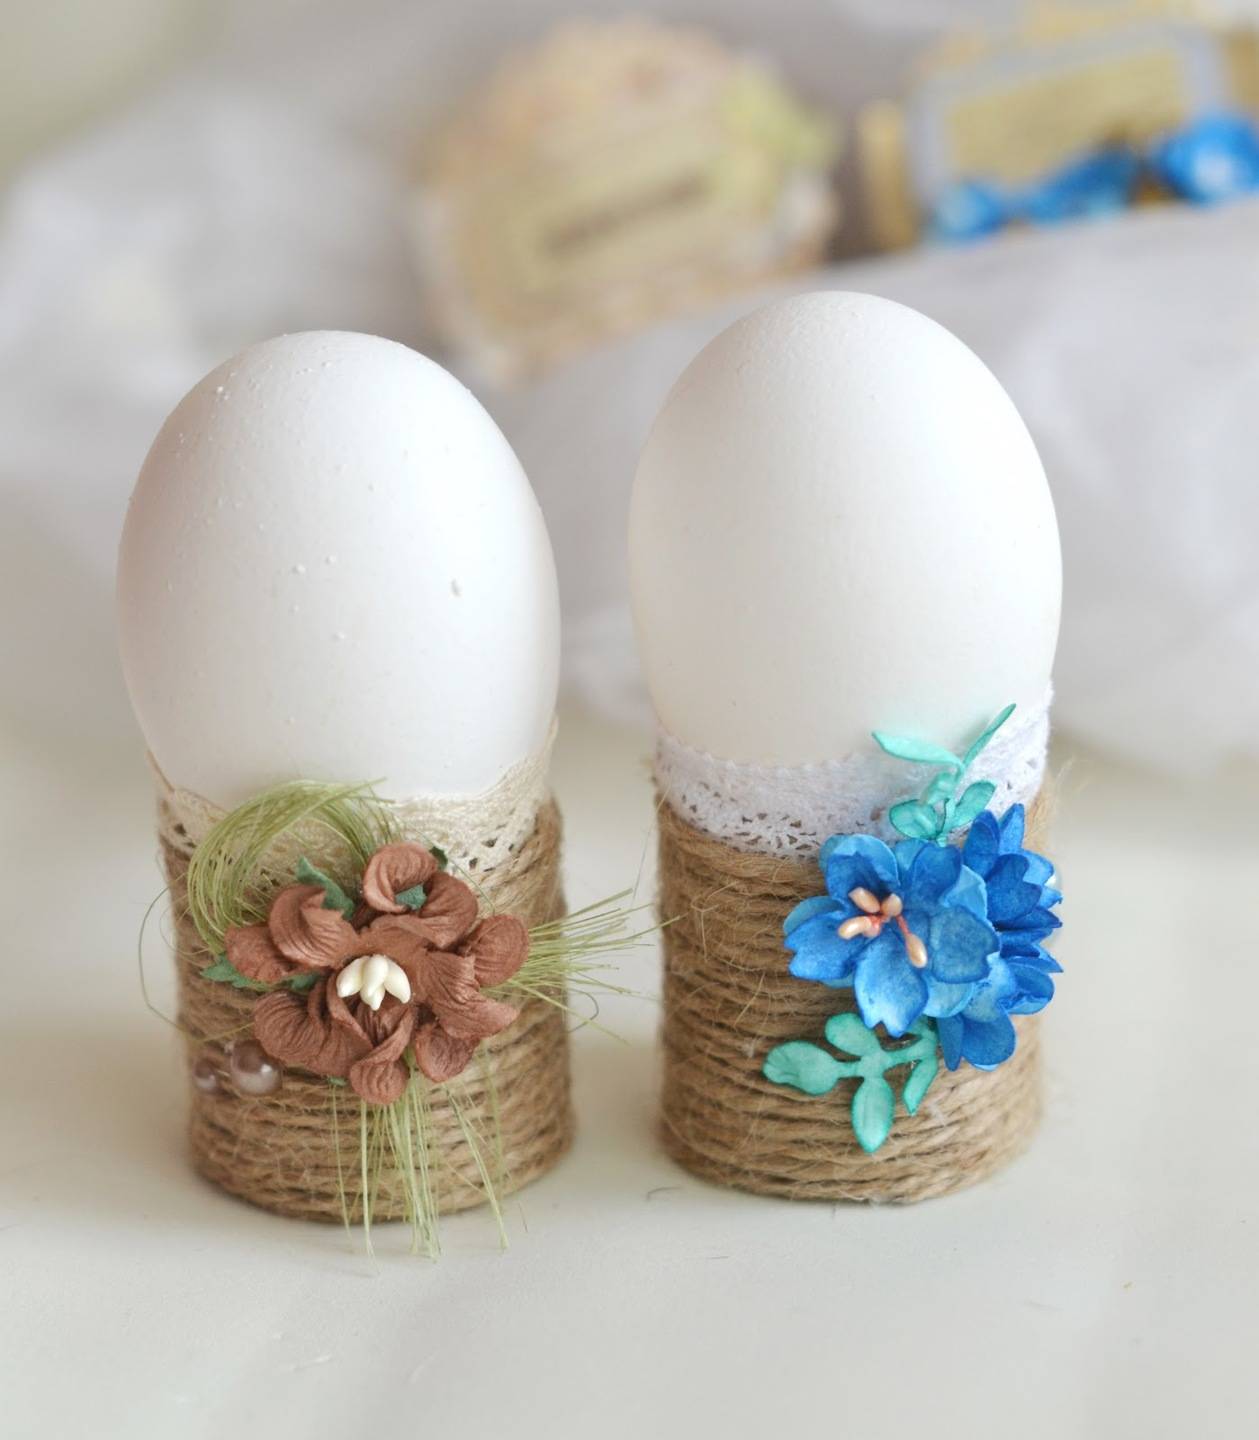 Как украсить яйца на пасху 2022? делаем декор для пасхальных яиц своими руками